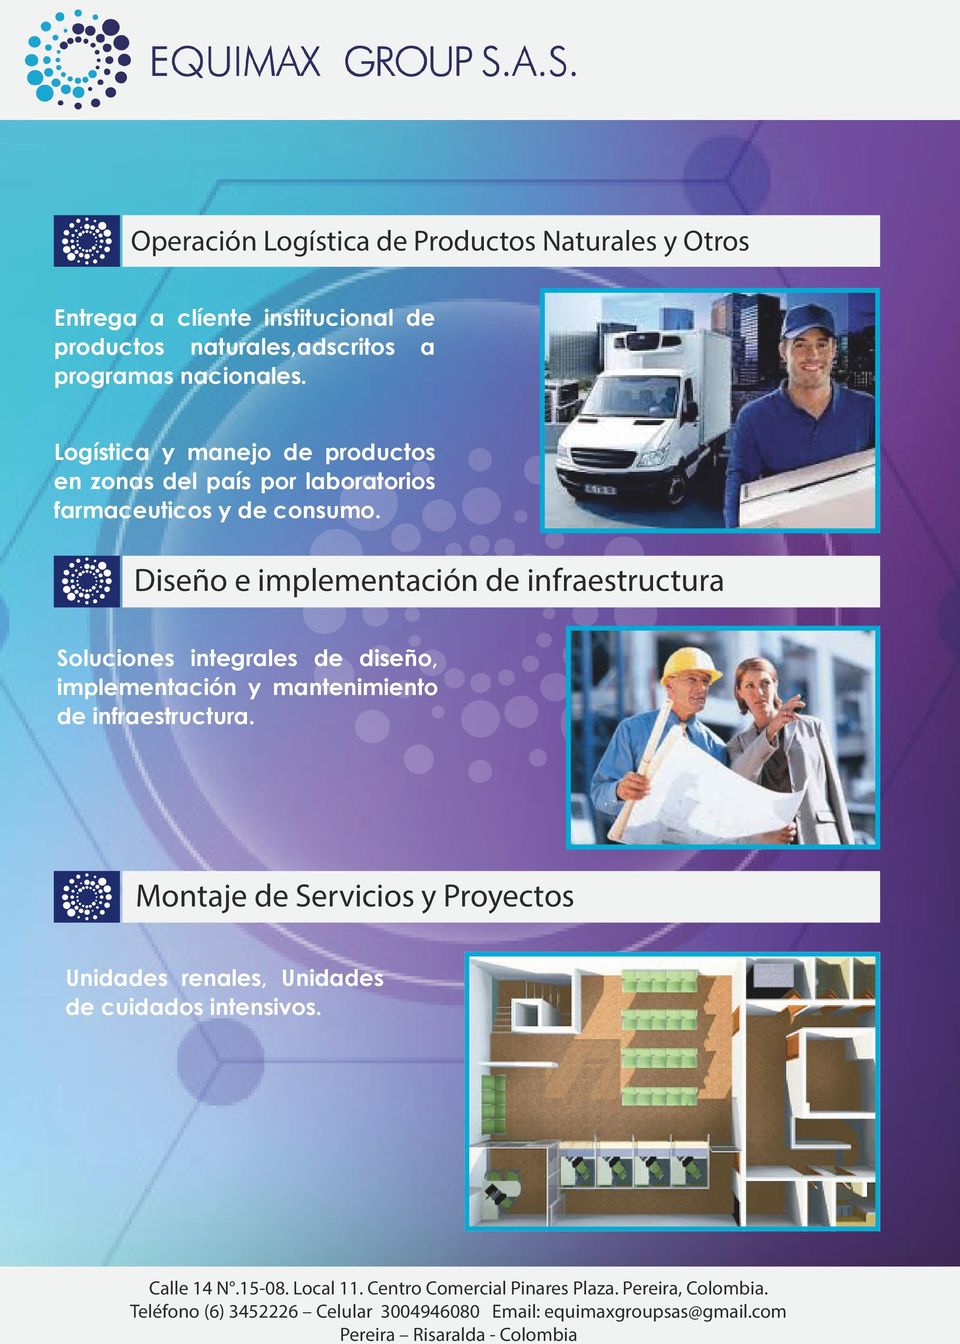 Logística y manejo de productos en zonas del país por laboratorios farmaceuticos y de consumo.